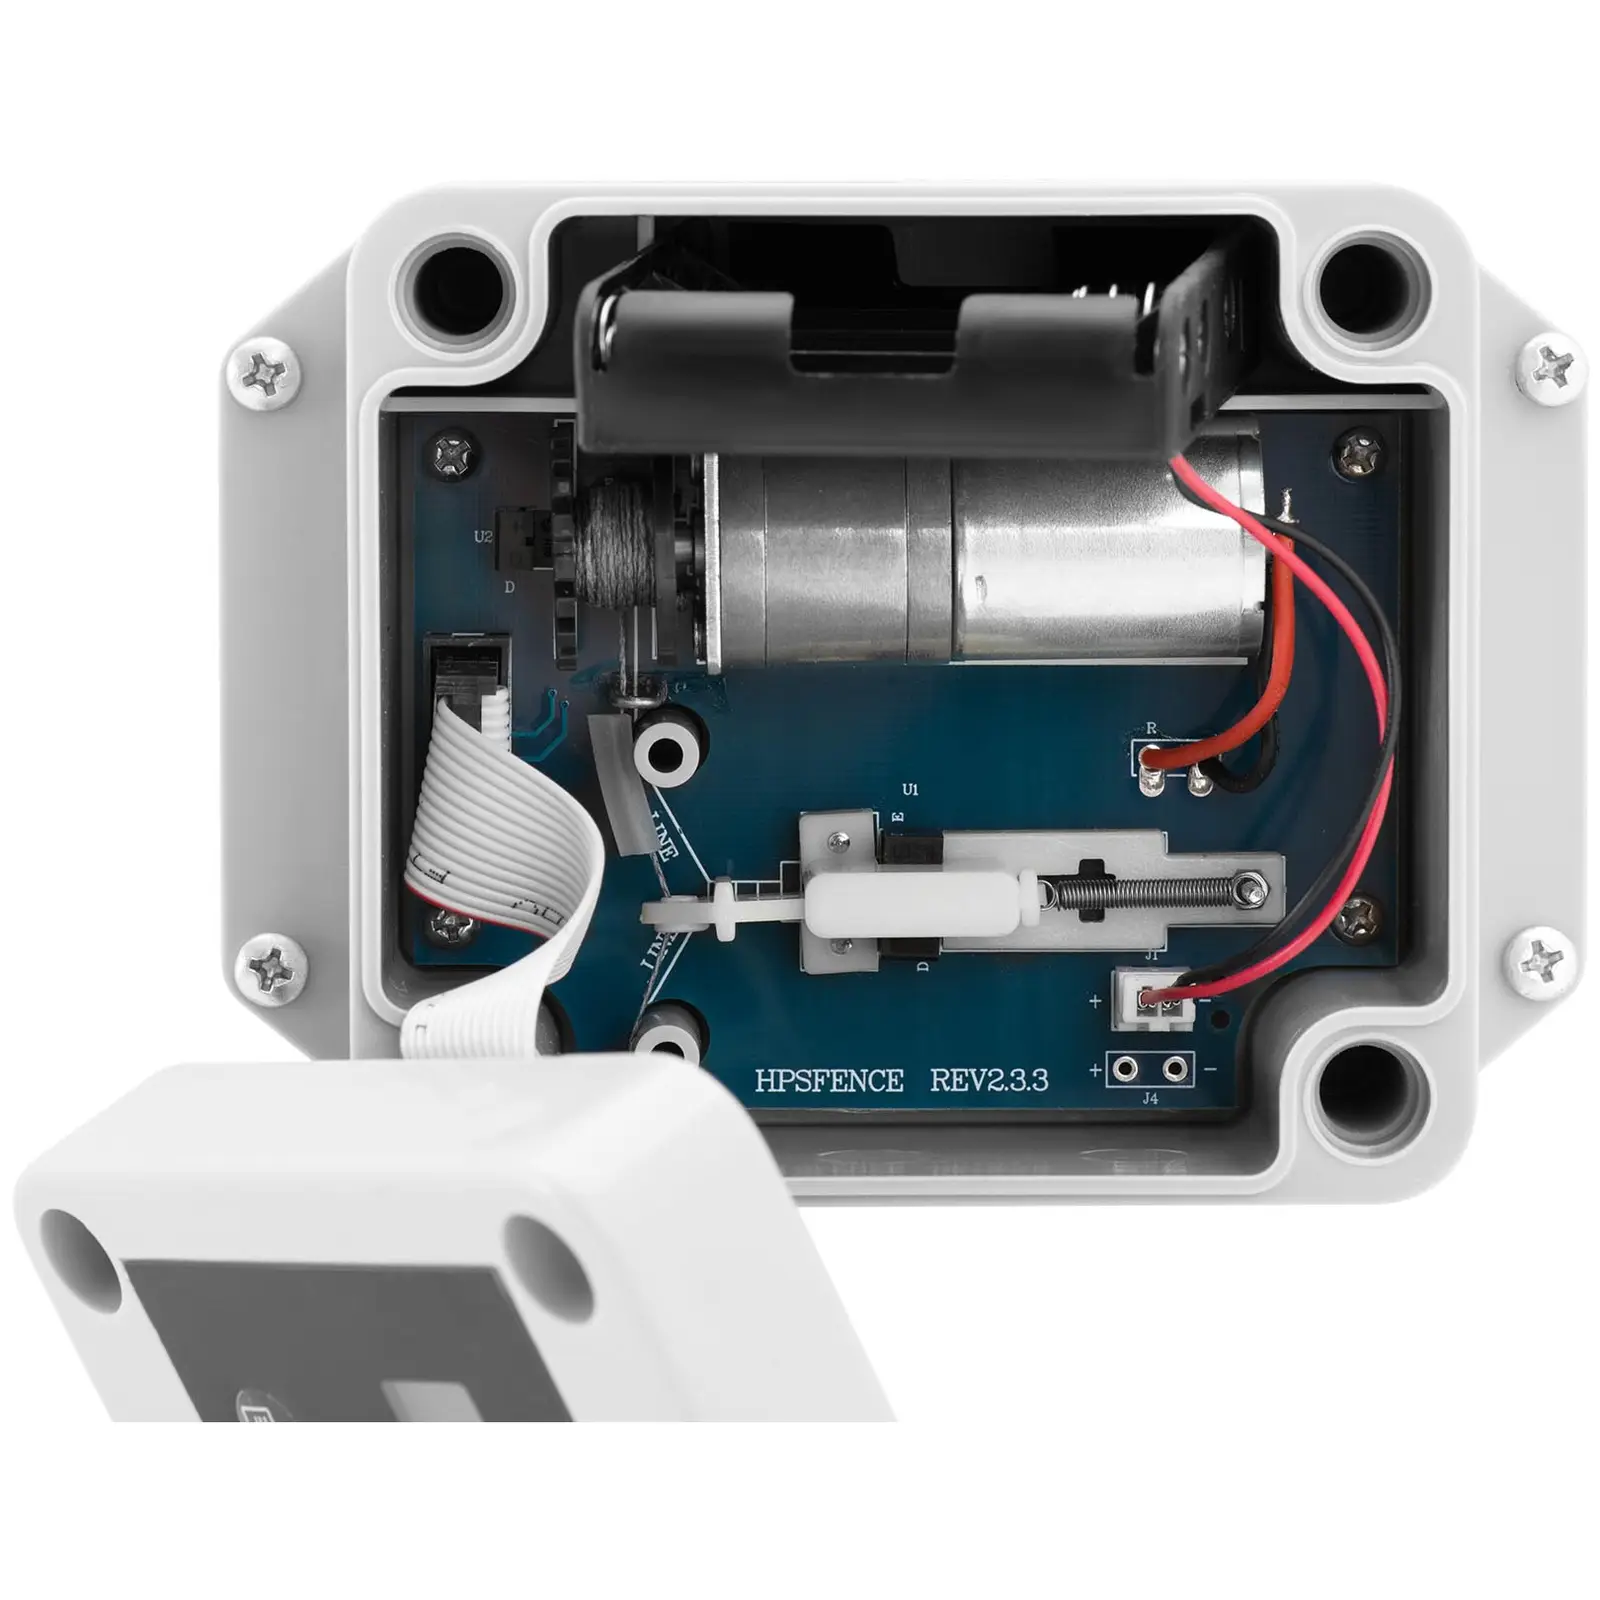 Automatyczne drzwi do kurnika - timer / czujnik światła - zasilanie bateryjne - wodoodporna obudowa - dokładny pomiar wartości lumenów